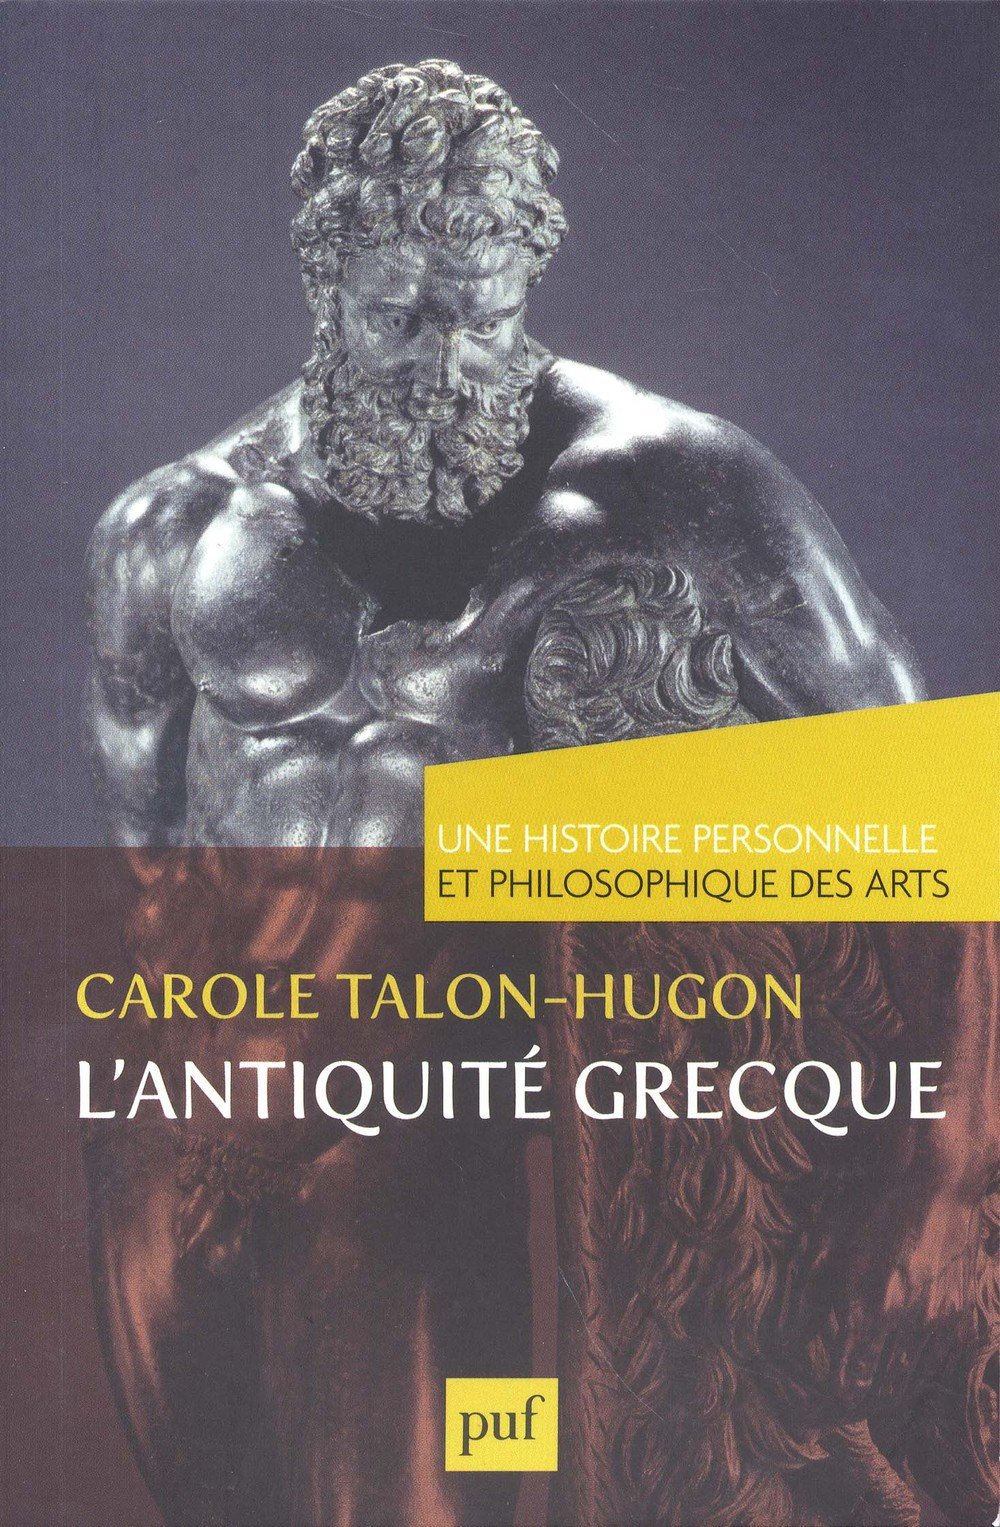 L'antiquité grecque, 2014, 132 p.